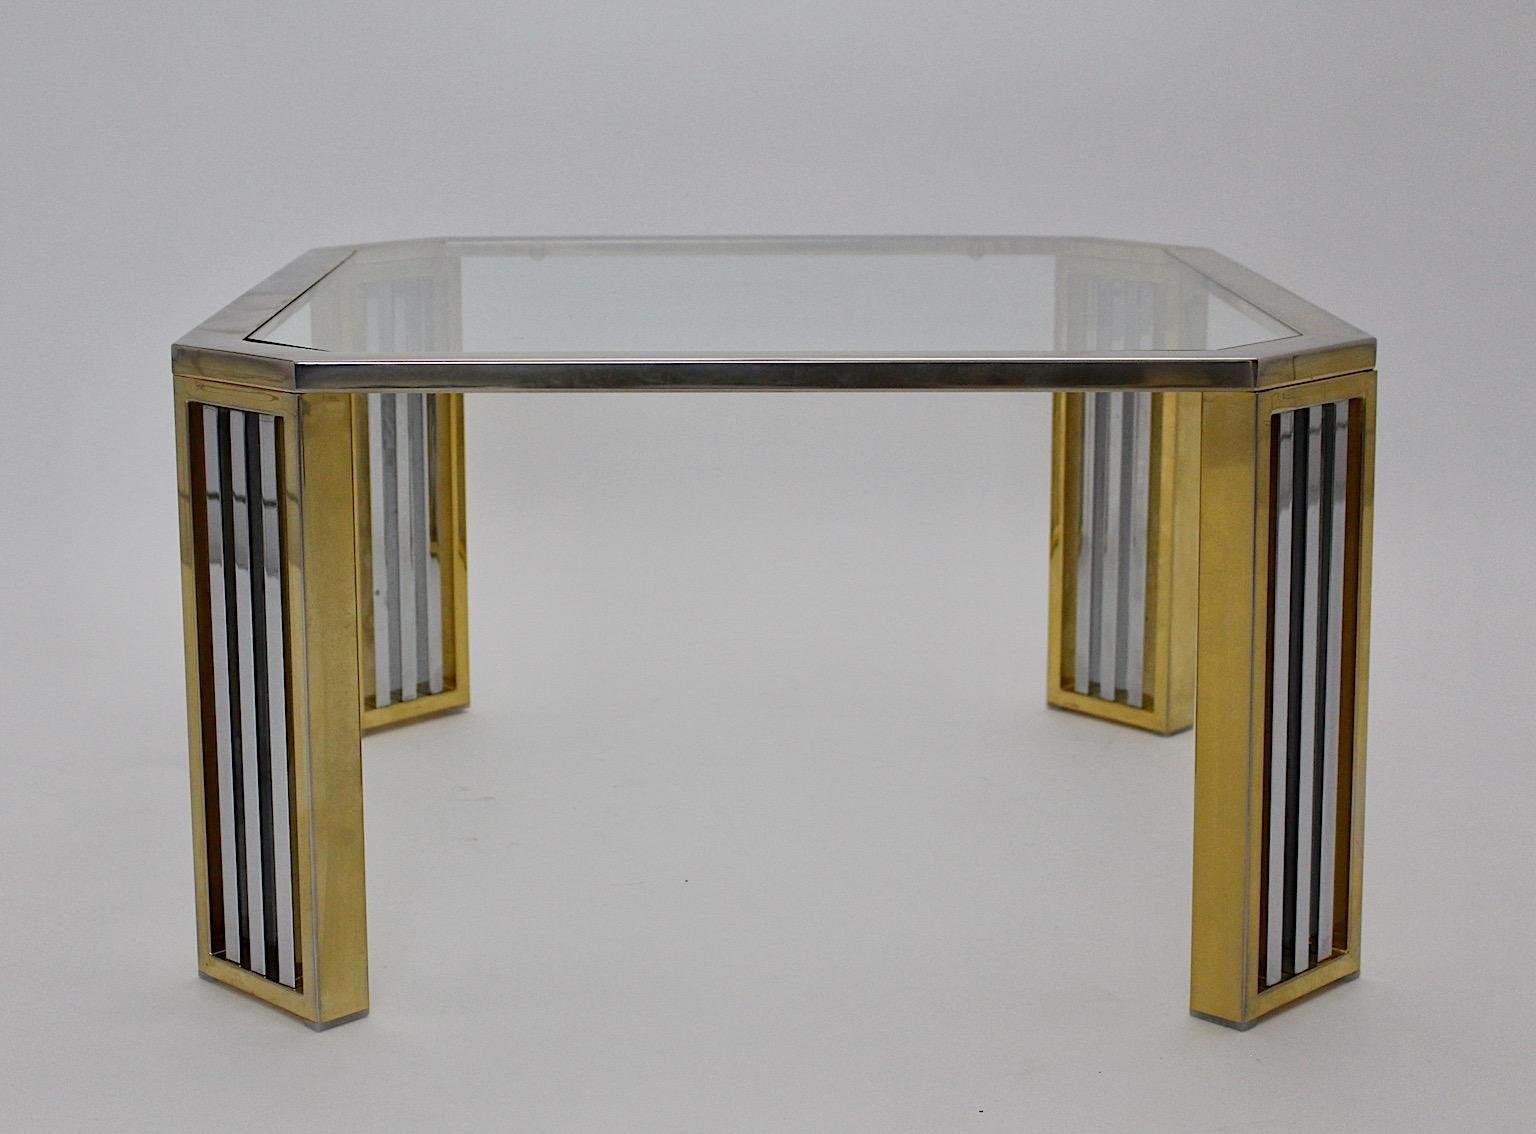 Table basse ou table de canapé vintage moderne en métal chromé et laiton, qui a été conçue, Italie, années 1970.
Quatre pieds en laiton avec des détails en métal ajouré chromé confèrent à cette table basse ou table de canapé un aspect très